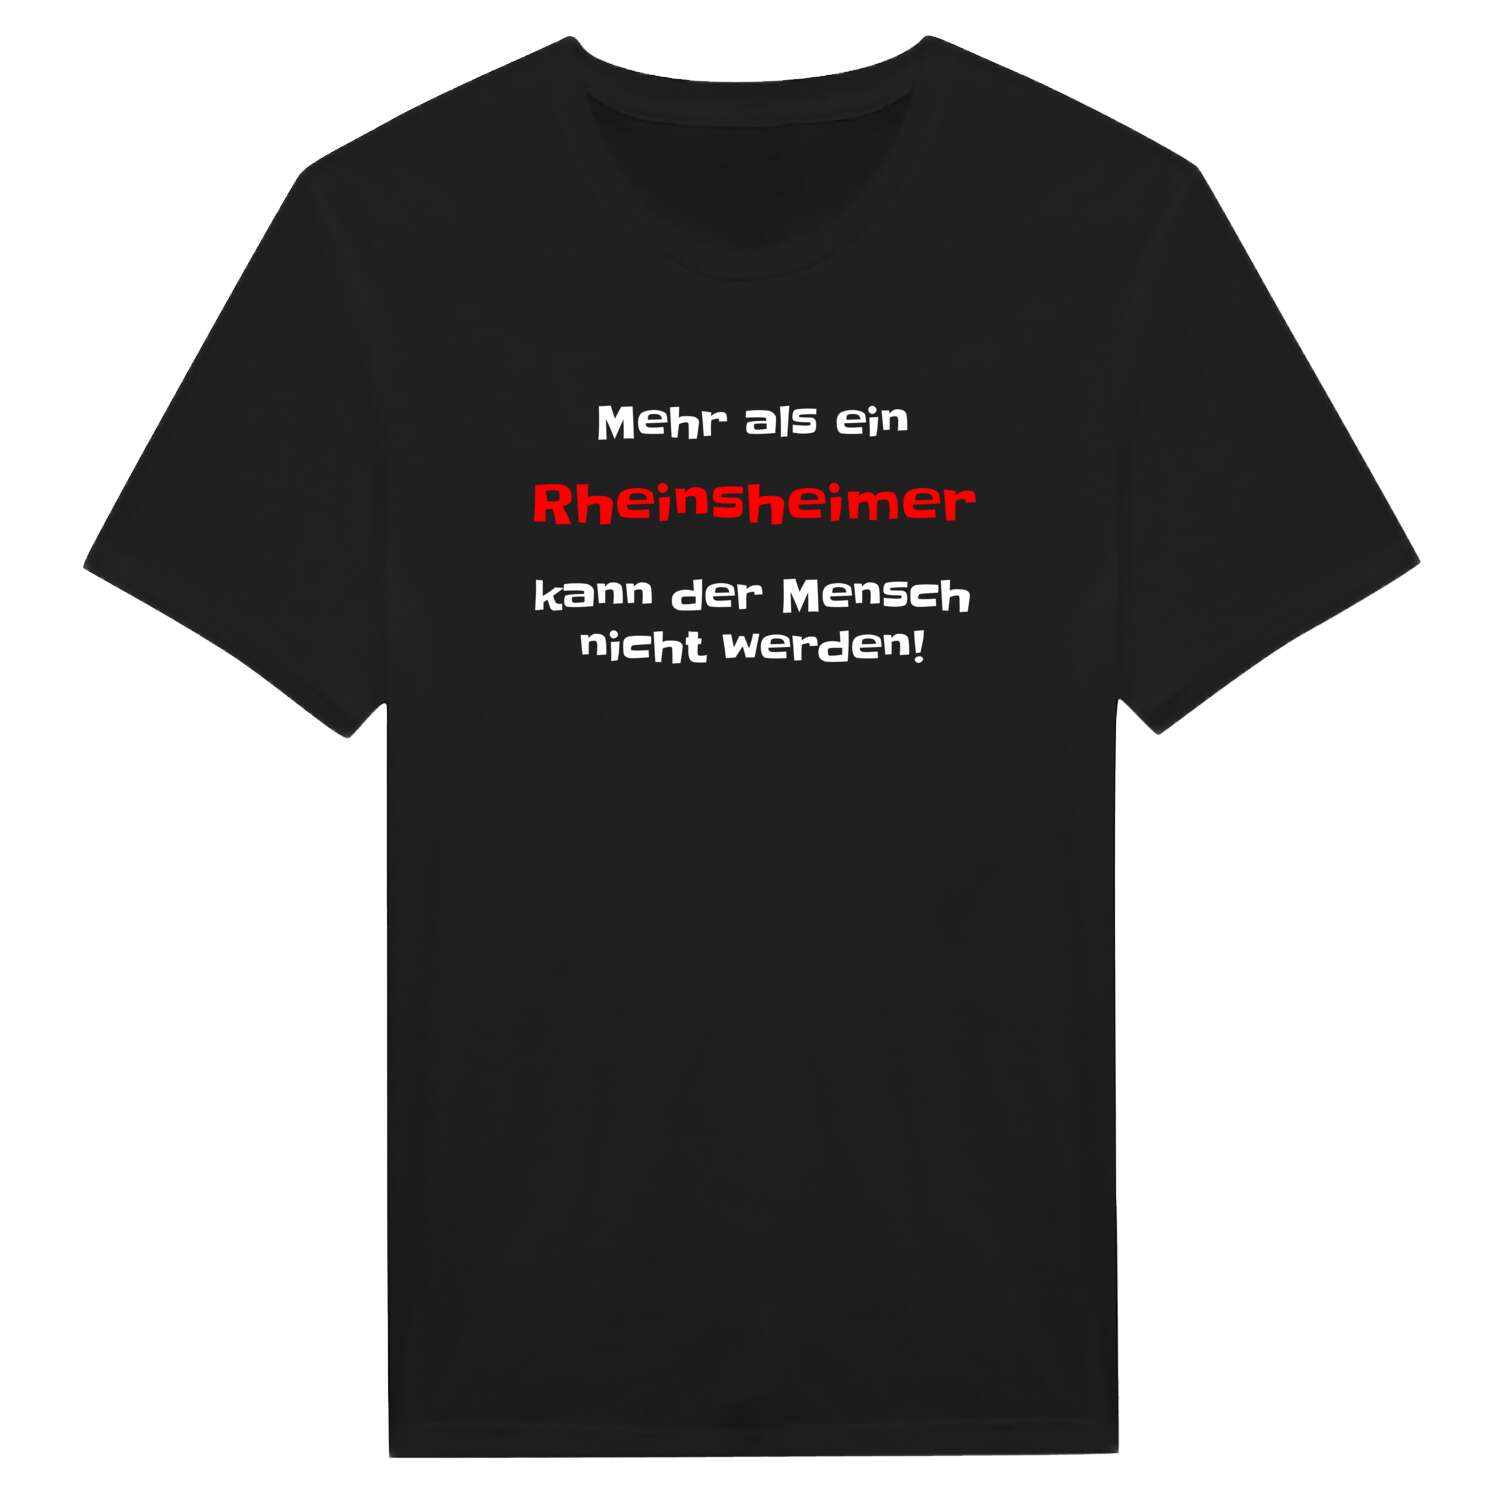 Rheinsheim T-Shirt »Mehr als ein«